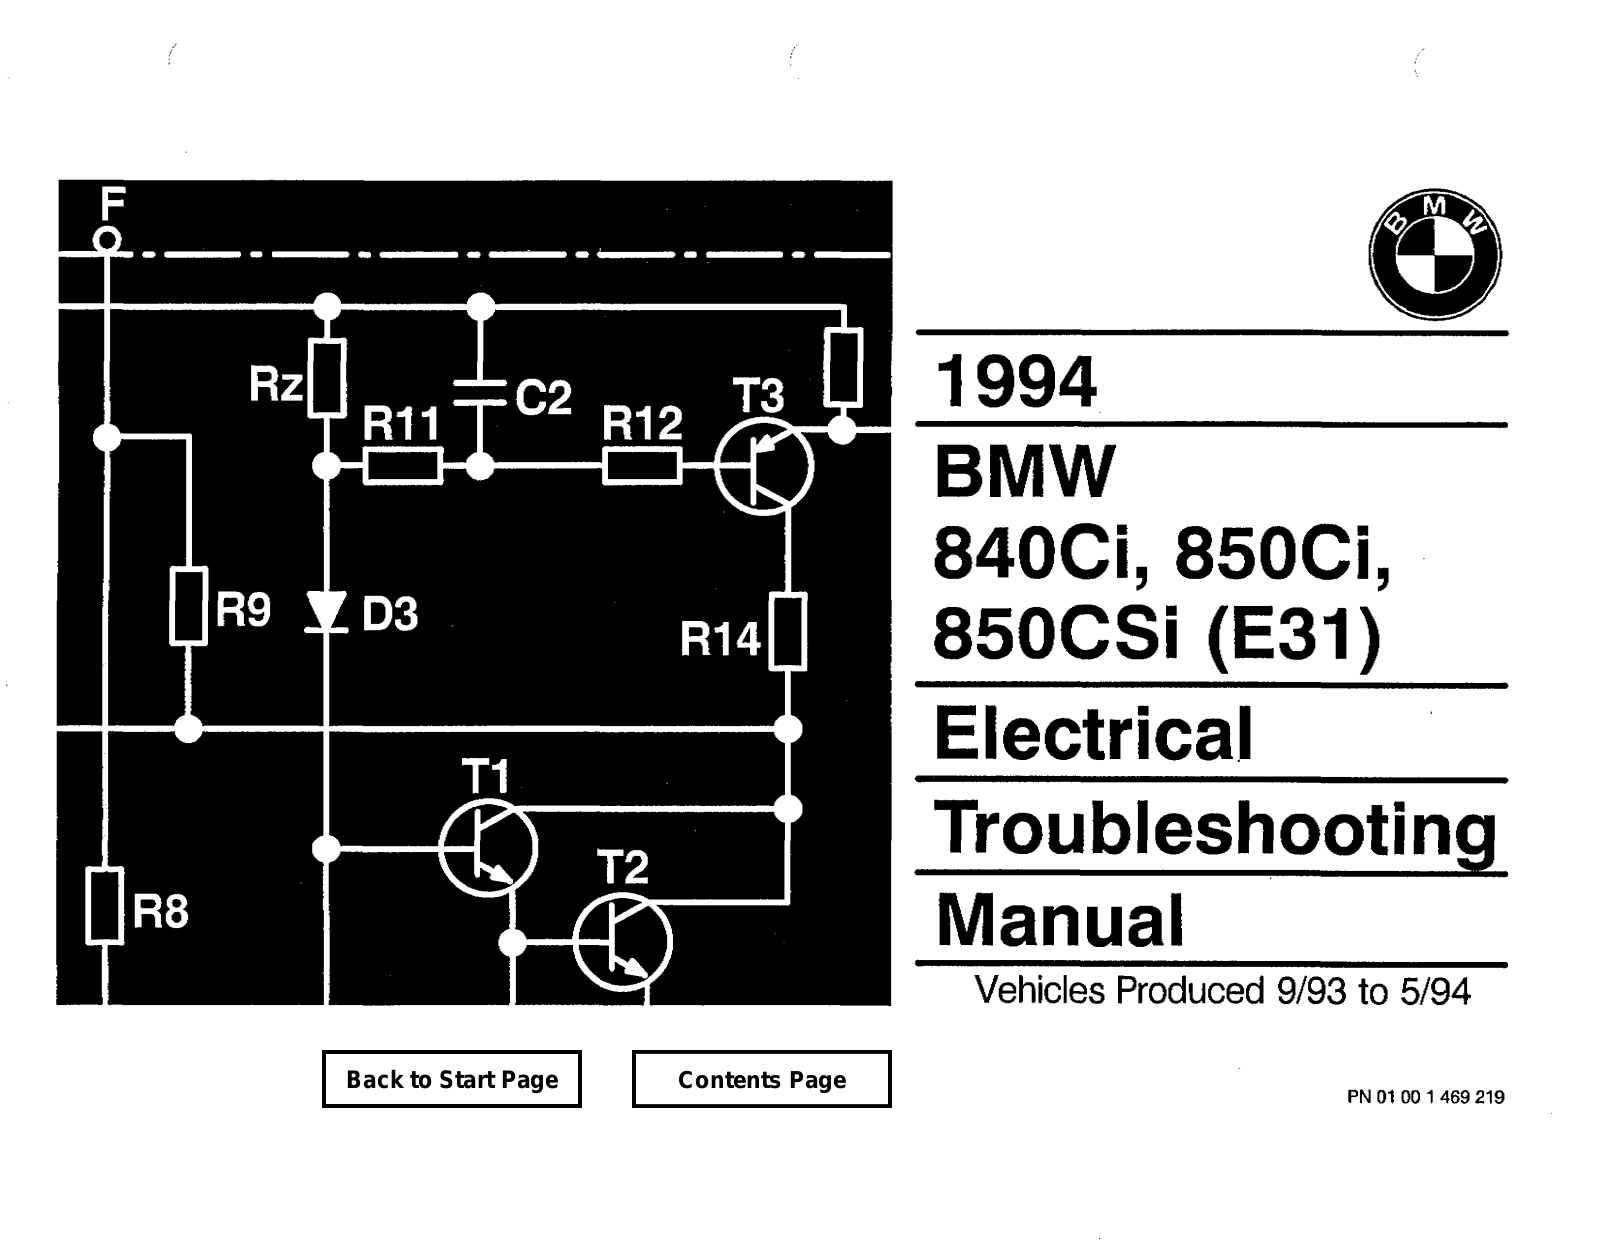 BMW 840ci, 850ci, 850csi User Manual